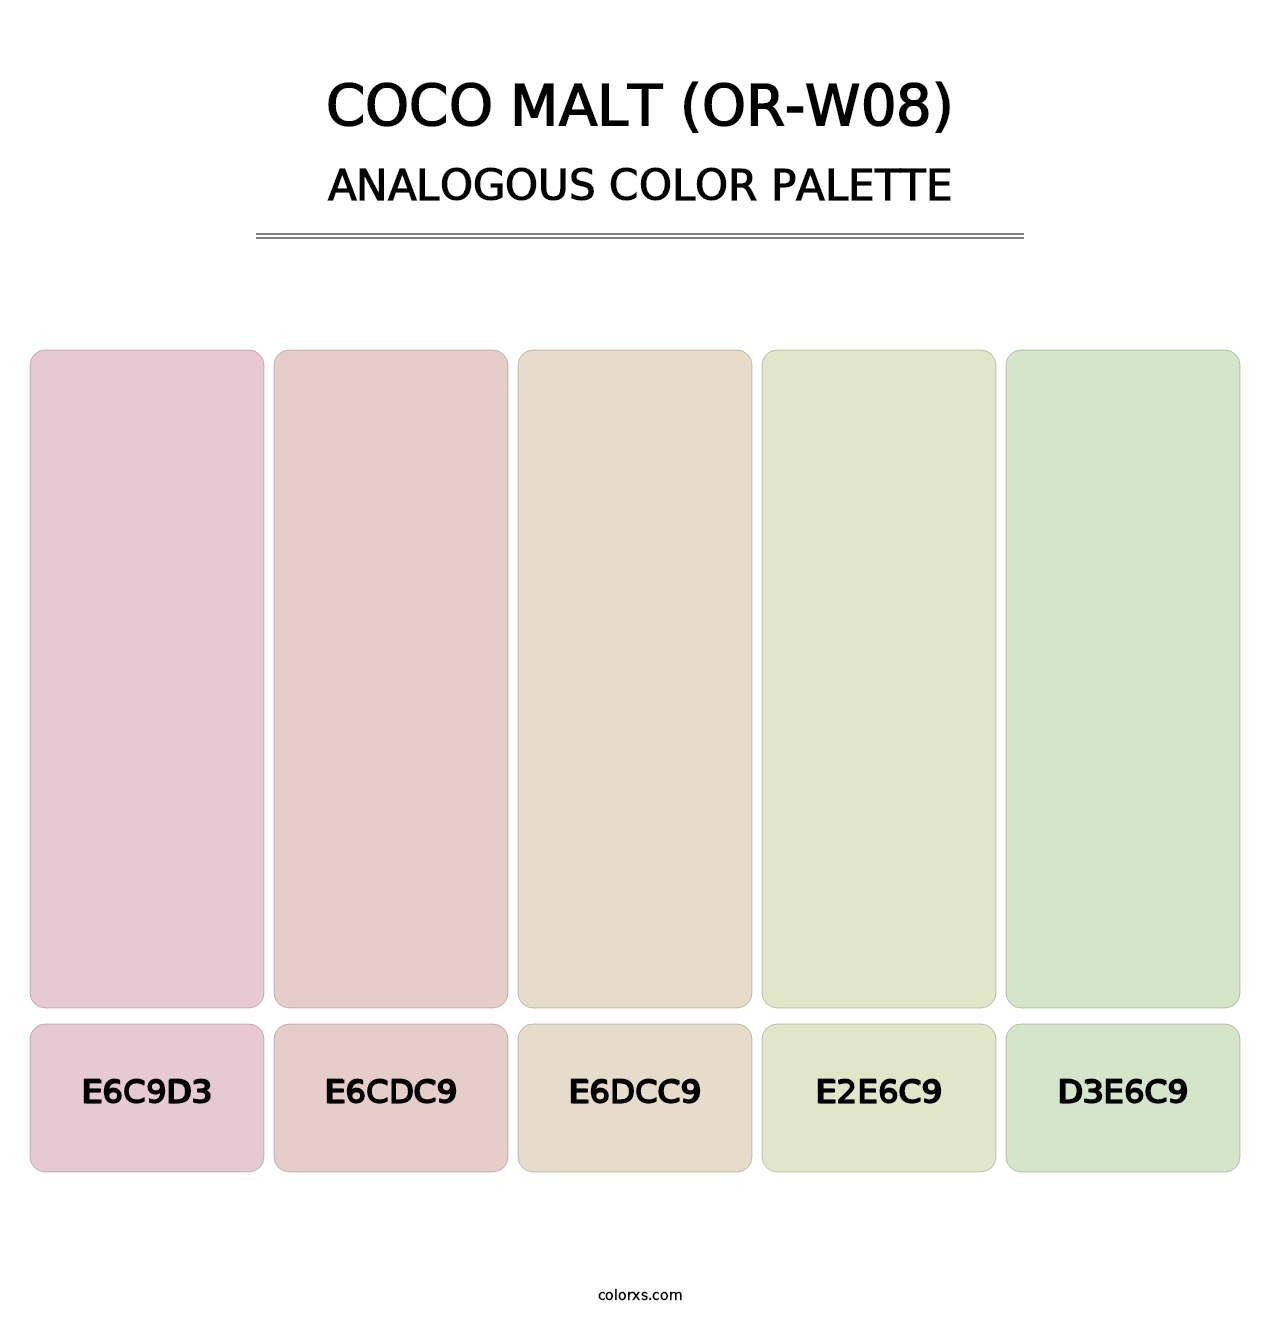 Coco Malt (OR-W08) - Analogous Color Palette